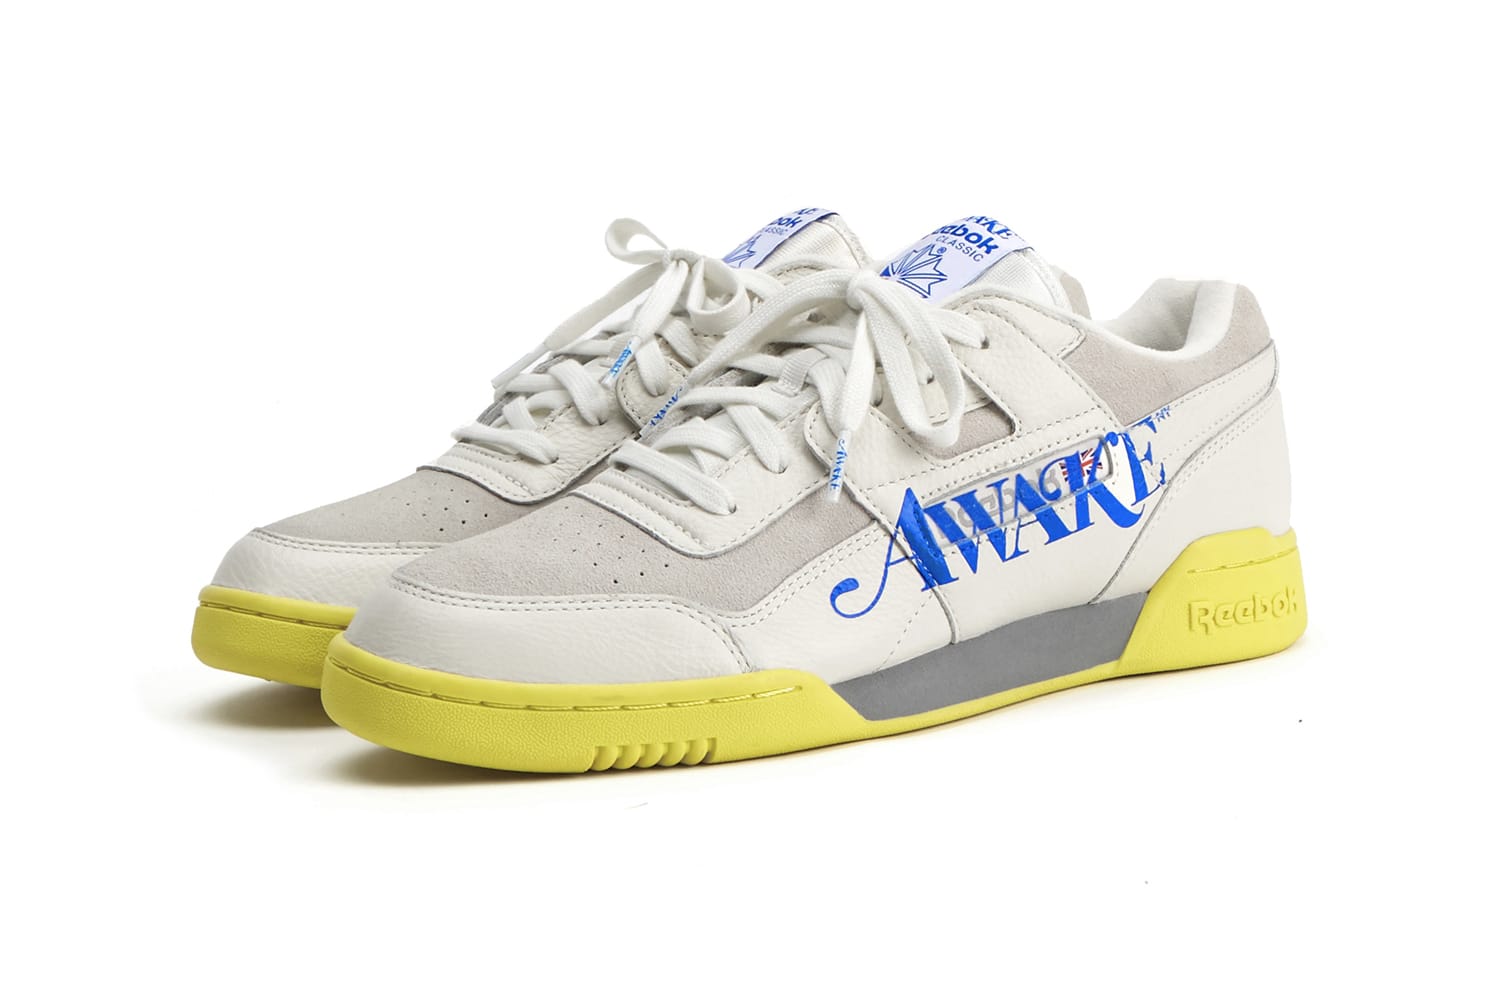 Awake NY x Reebok Classics Footwear & Apparel Capsule | HYPEBEAST